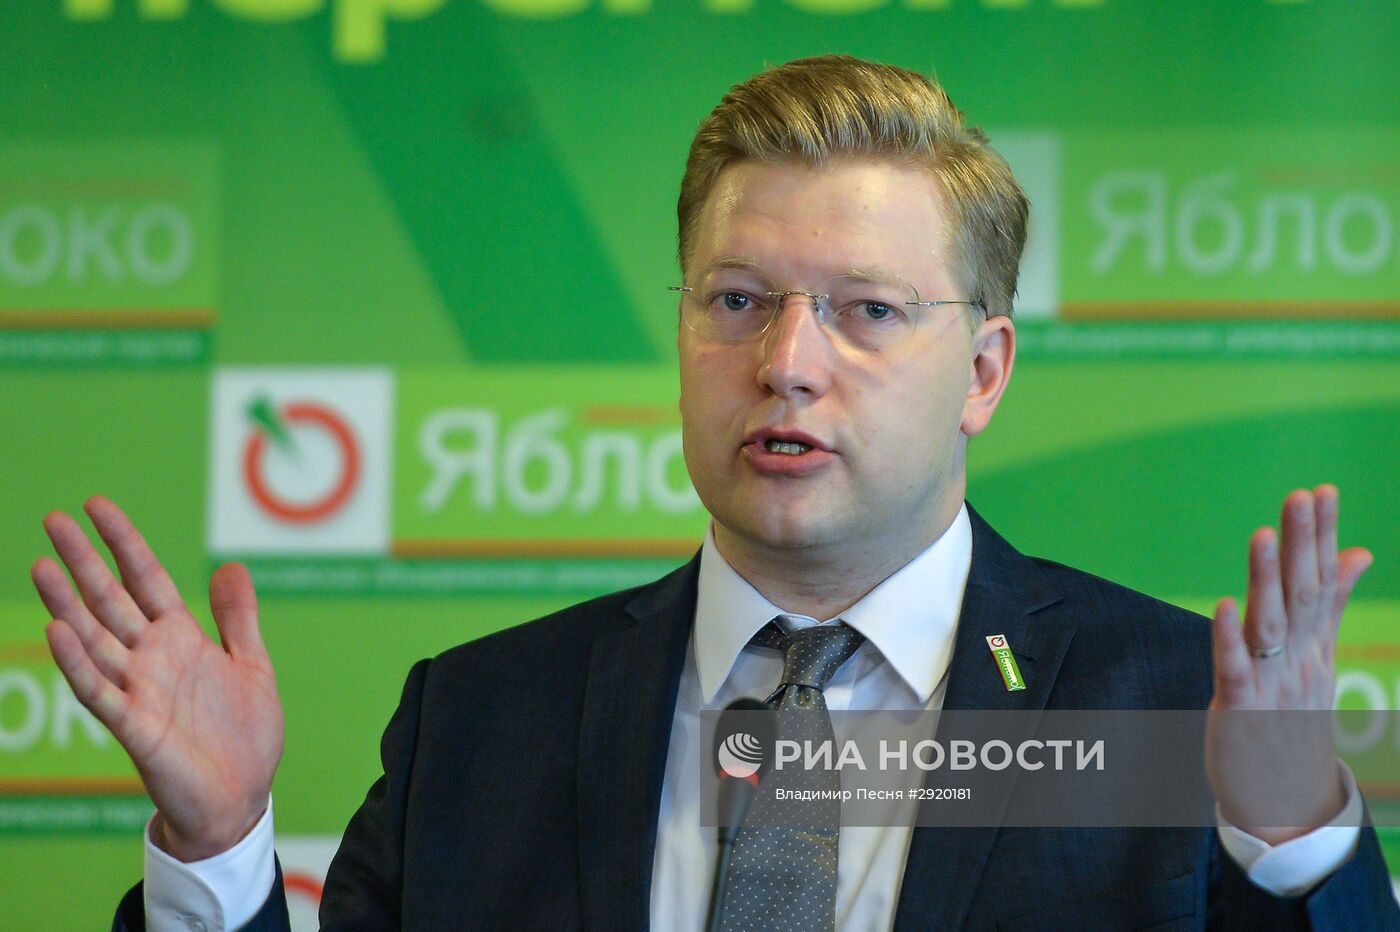 Партия "Яблоко" представила план законодательной работы в Госдуме